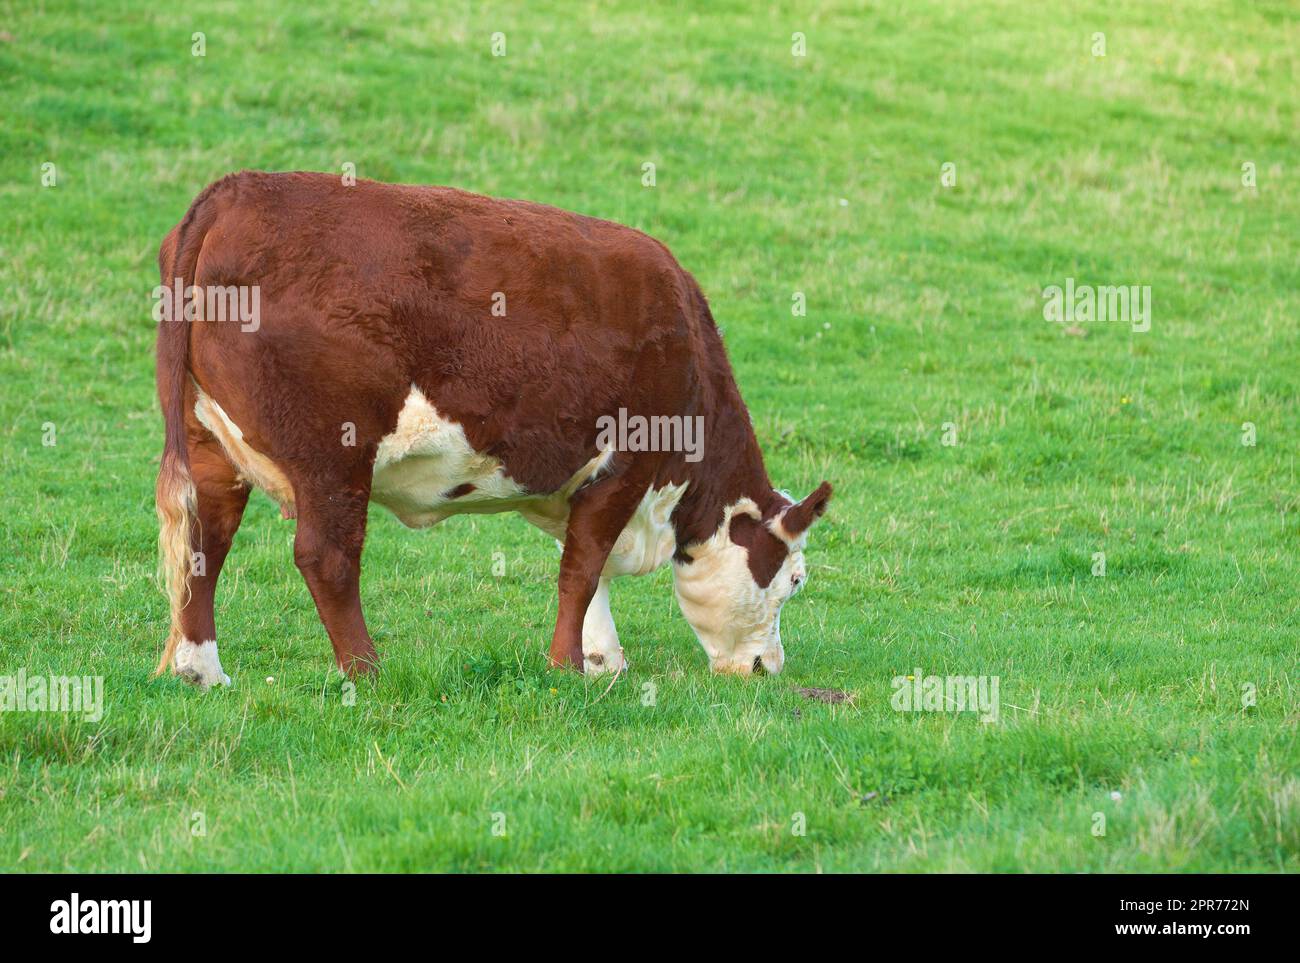 Élevage d'animaux bovins pour l'élevage de bovins dans un pré pour produire du lait ou du bœuf. Bétail broutant pour la nourriture sur des terres ouvertes dans la nature. Copier l'espace avec la vache mangeant de l'herbe sur un terrain lors d'une journée ensoleillée à l'extérieur Banque D'Images